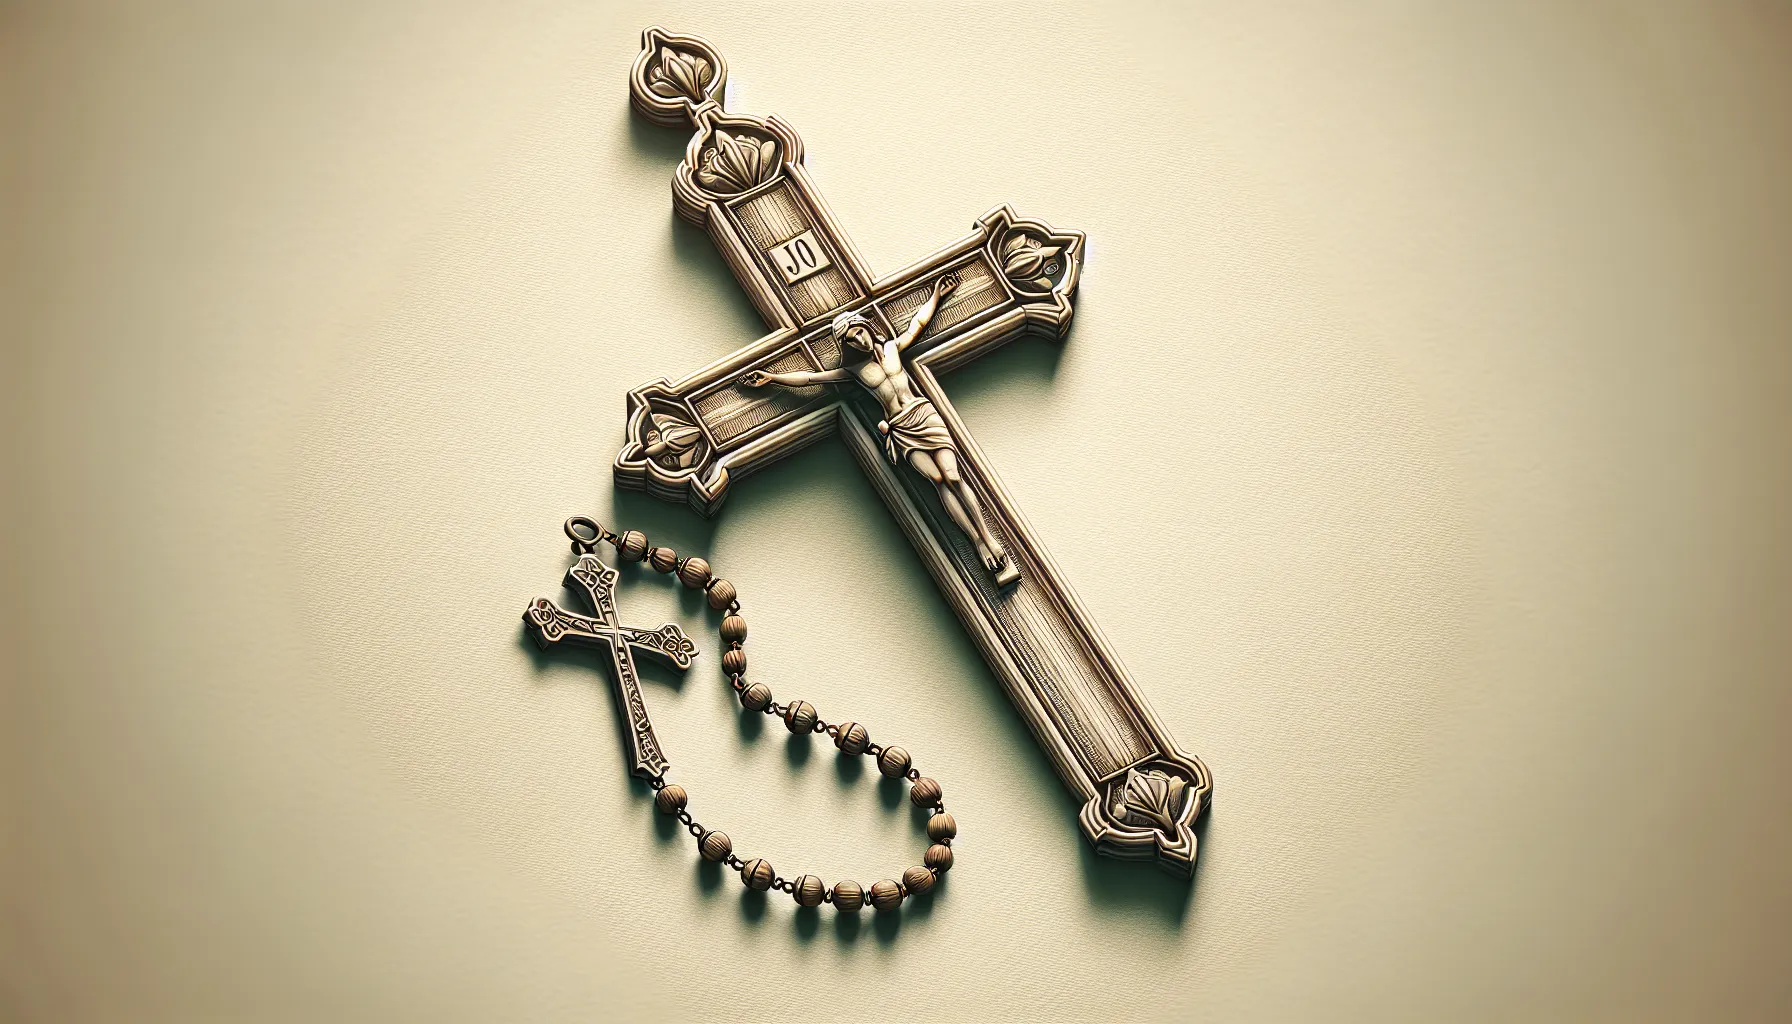 Imagen ilustrativa de una cruz y un rosario, símbolos representativos del Catolicismo Romano, destacando su importancia e influencia en la historia de la Iglesia.